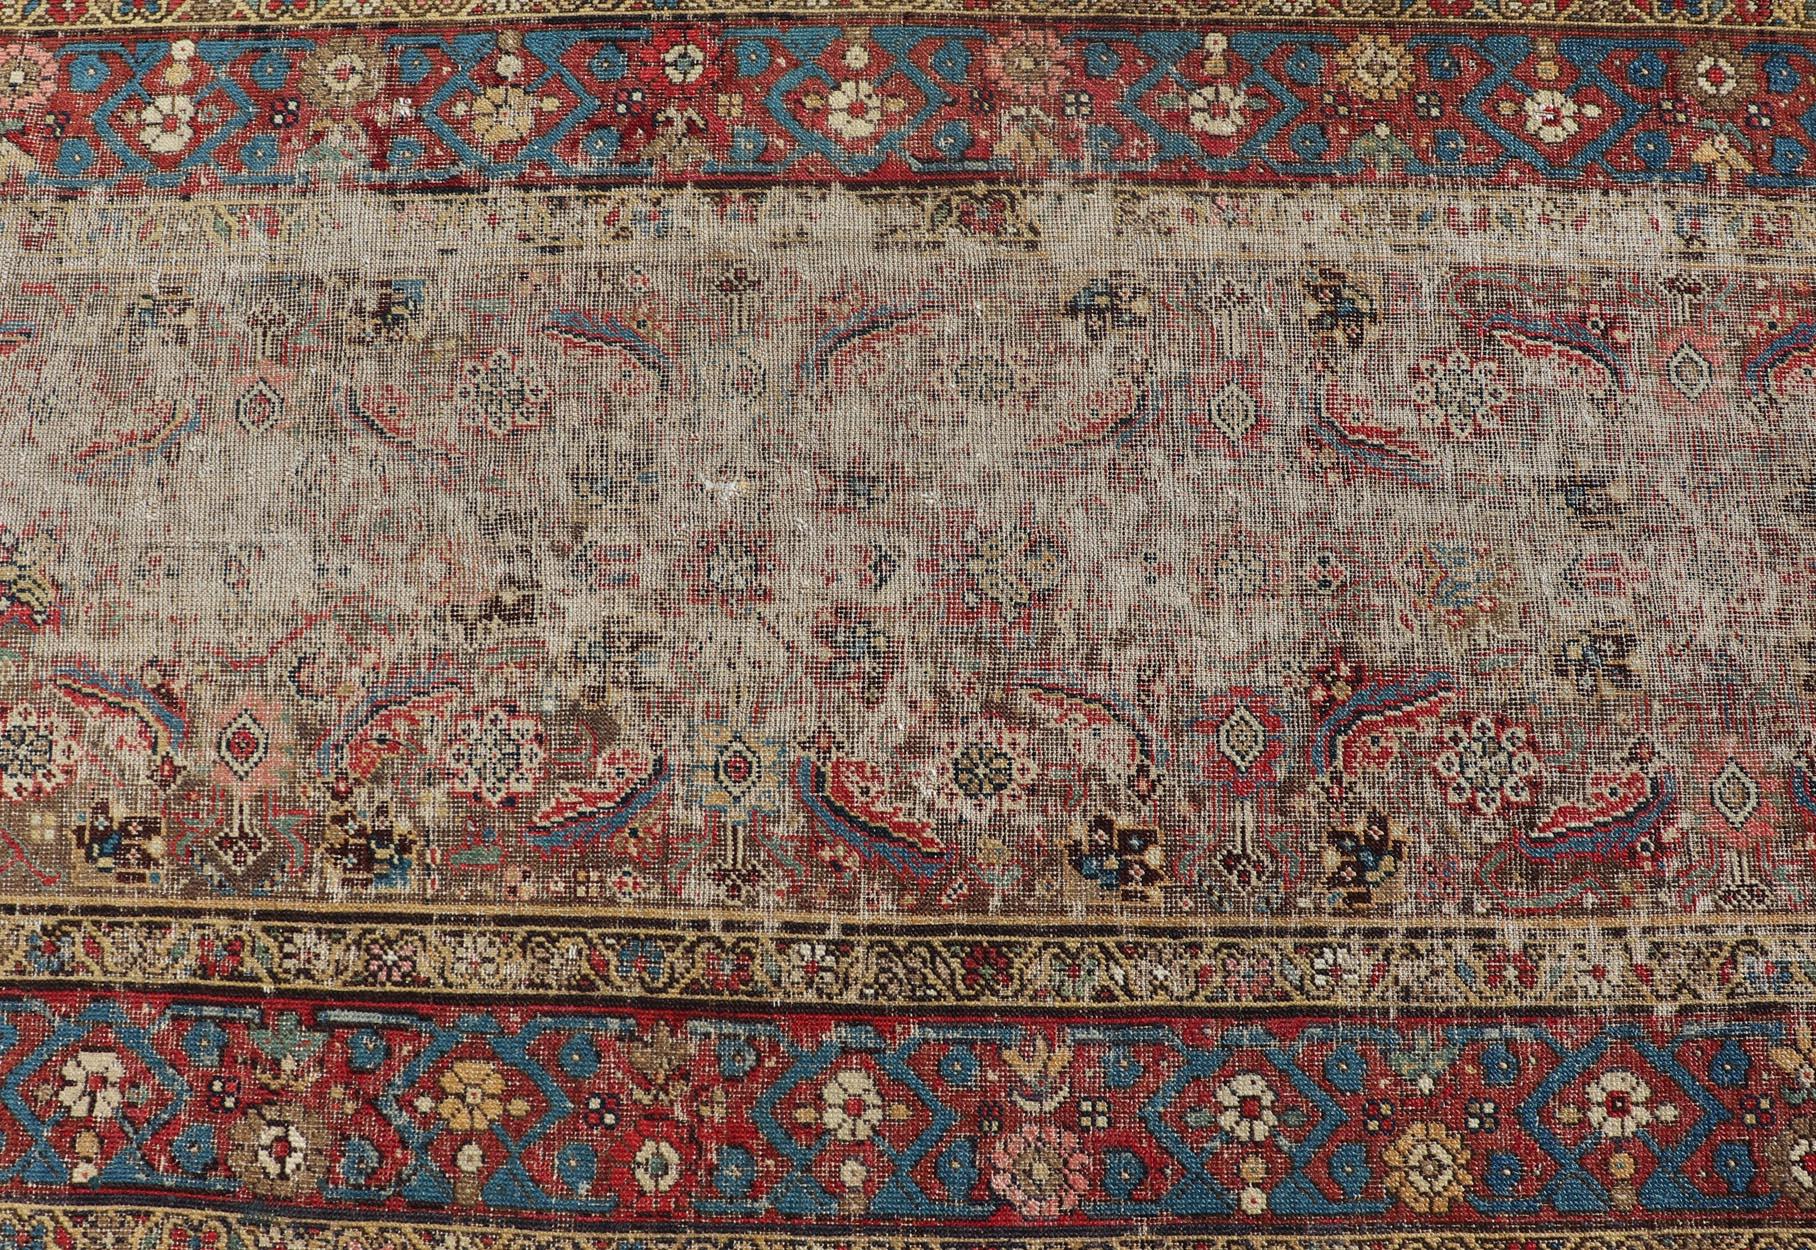 Cet exquis tapis de course persan Sultanabad, noué à la main, présente un motif floral subgéométrique sur toute sa surface, dans des tons de bijoux, et entouré d'une bordure complémentaire à plusieurs niveaux. Ce tapis s'adapte parfaitement à une